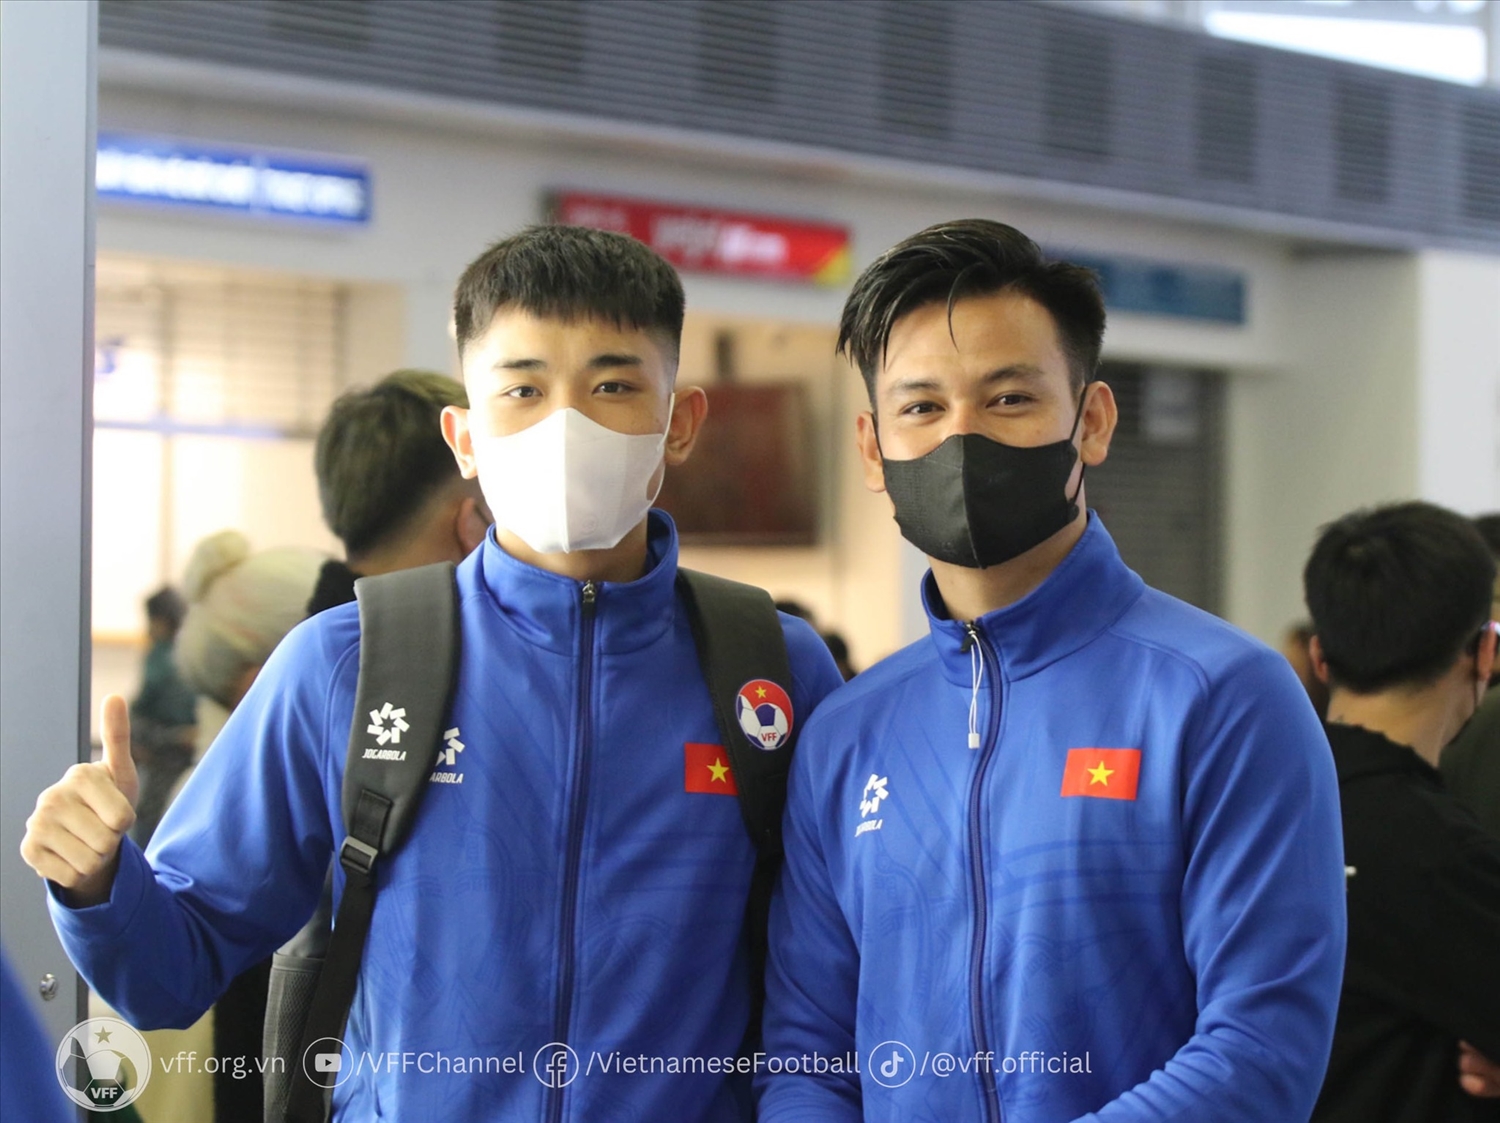 Các cầu thủ của đội tuyển Việt Nam lên đường sang Qatar (Ảnh VFF)